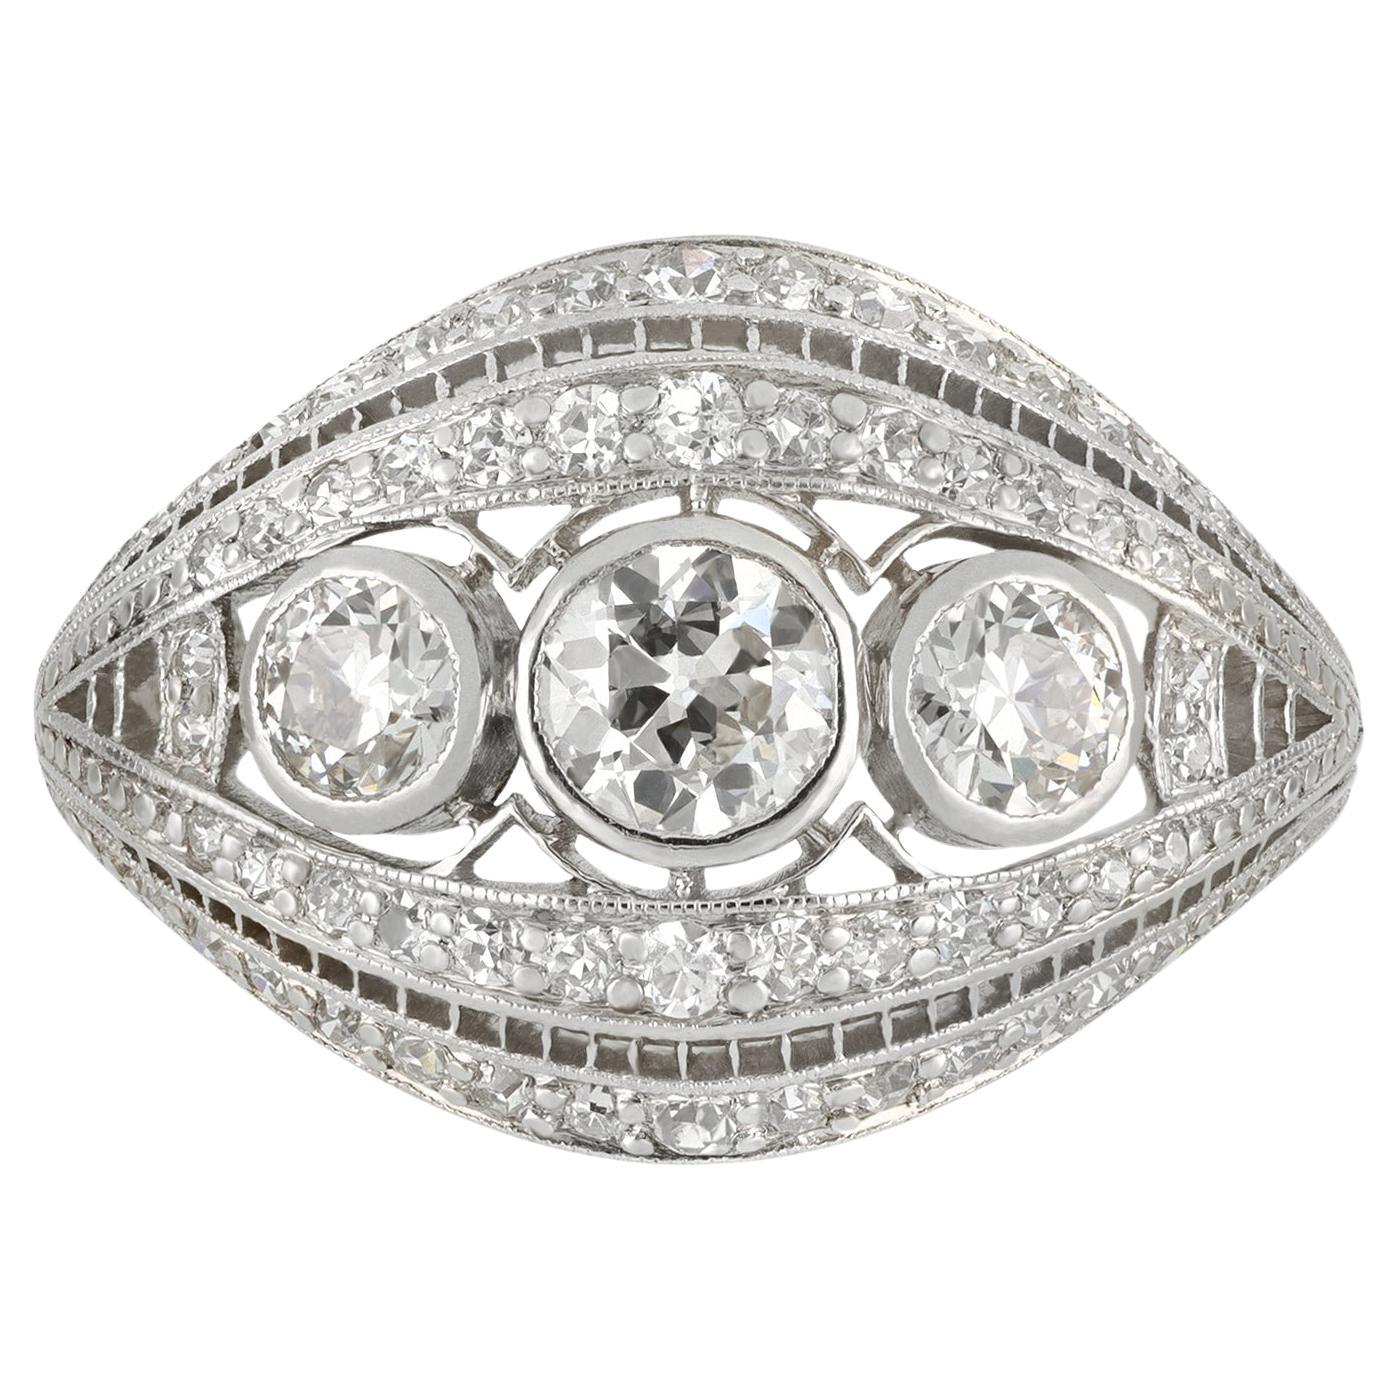 J. E. Caldwell Antique diamond Platinum cluster ring